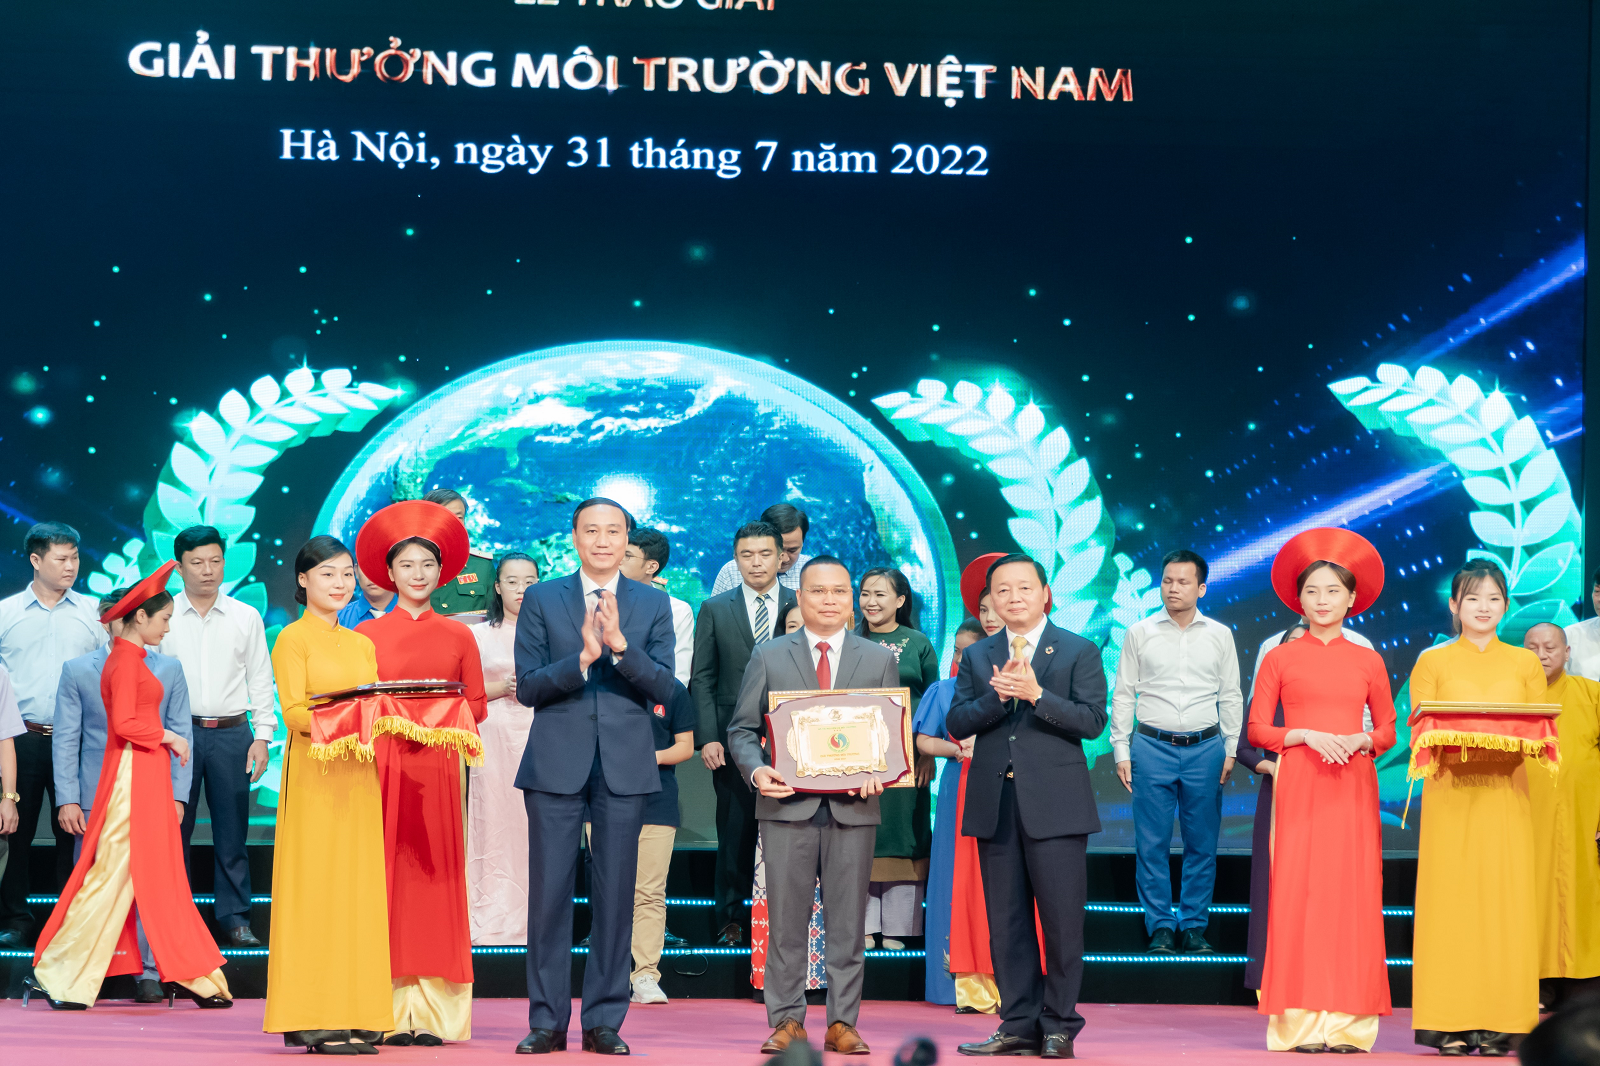 Giảng viên Trường Đại học Kinh tế - ĐHQGHN nhận Giải thưởng Môi trường Việt Nam năm 2021